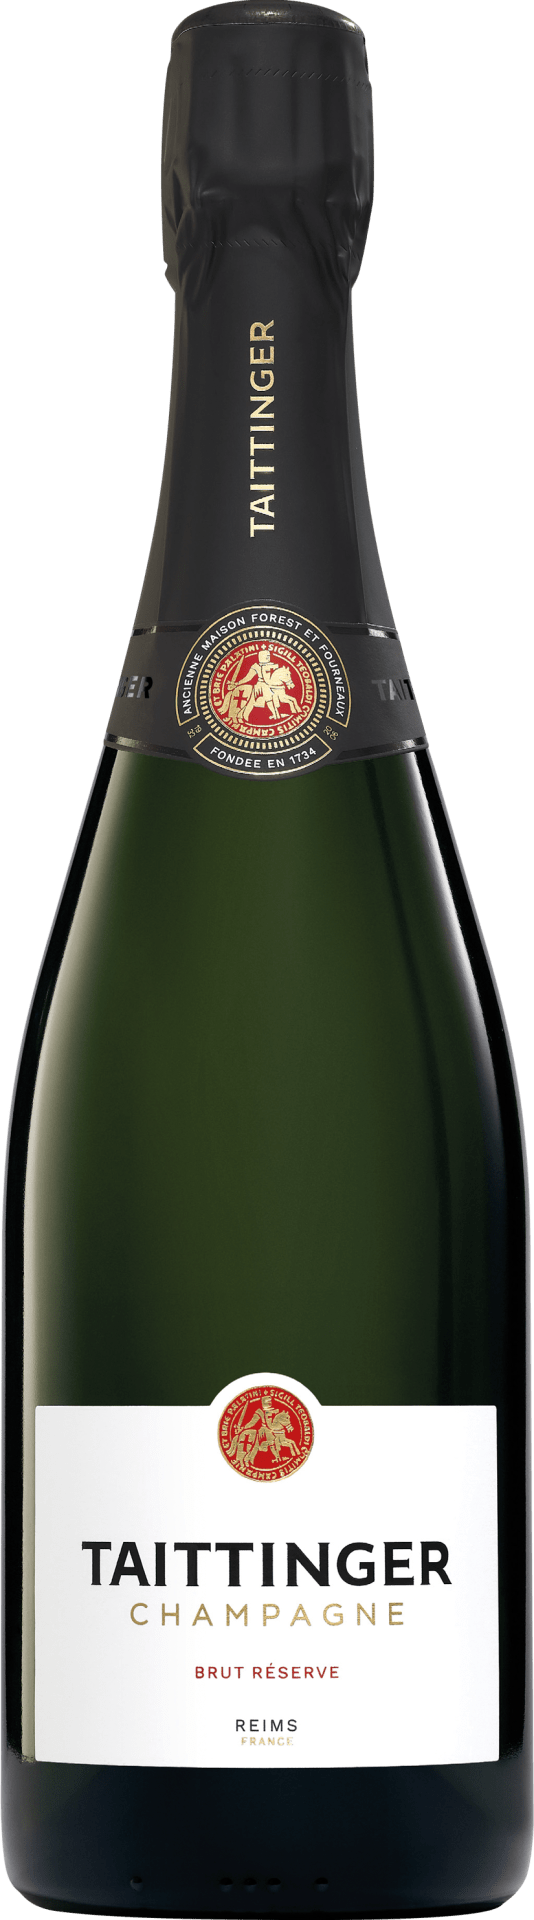 Champagne Taittinger Brut Réserve - 0.75 l